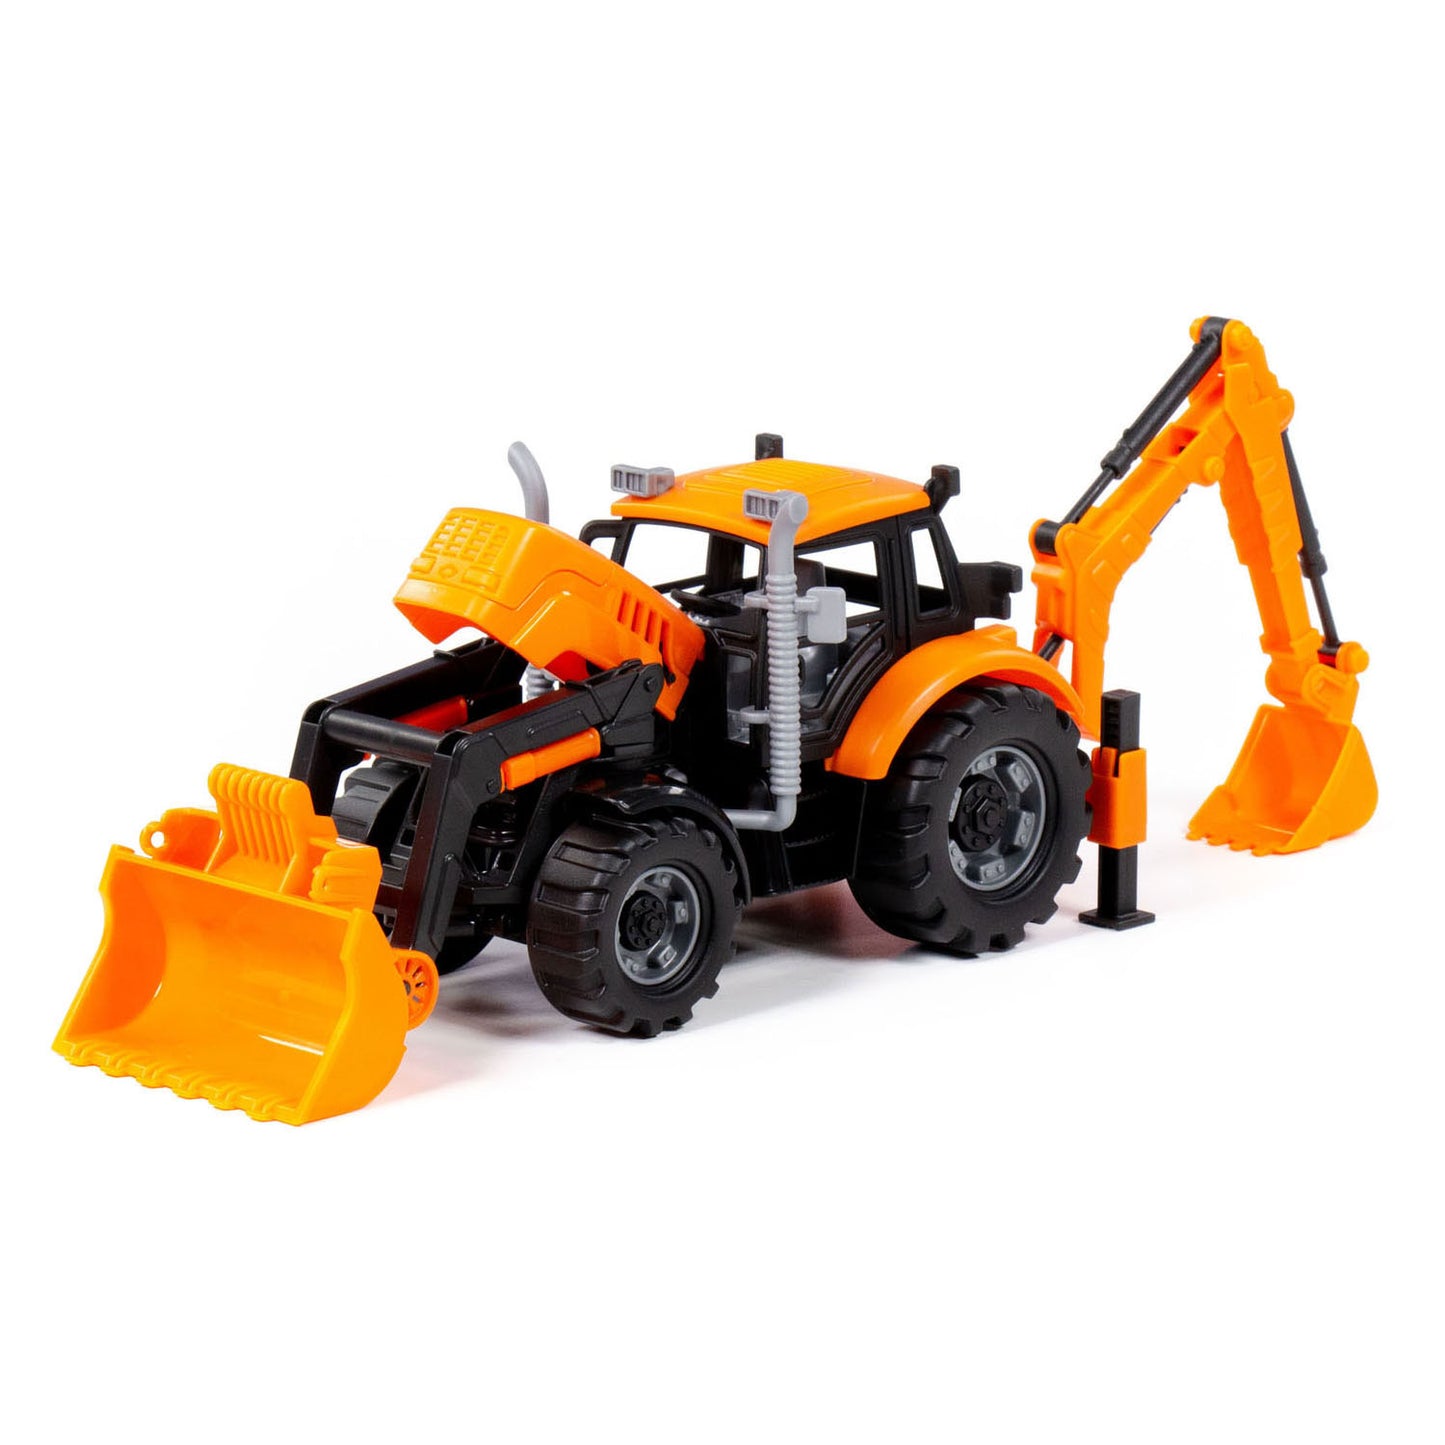 Cavallino Toys Tractor Cavallino con caricabatterie ed escavatore giallo, scala 1:32